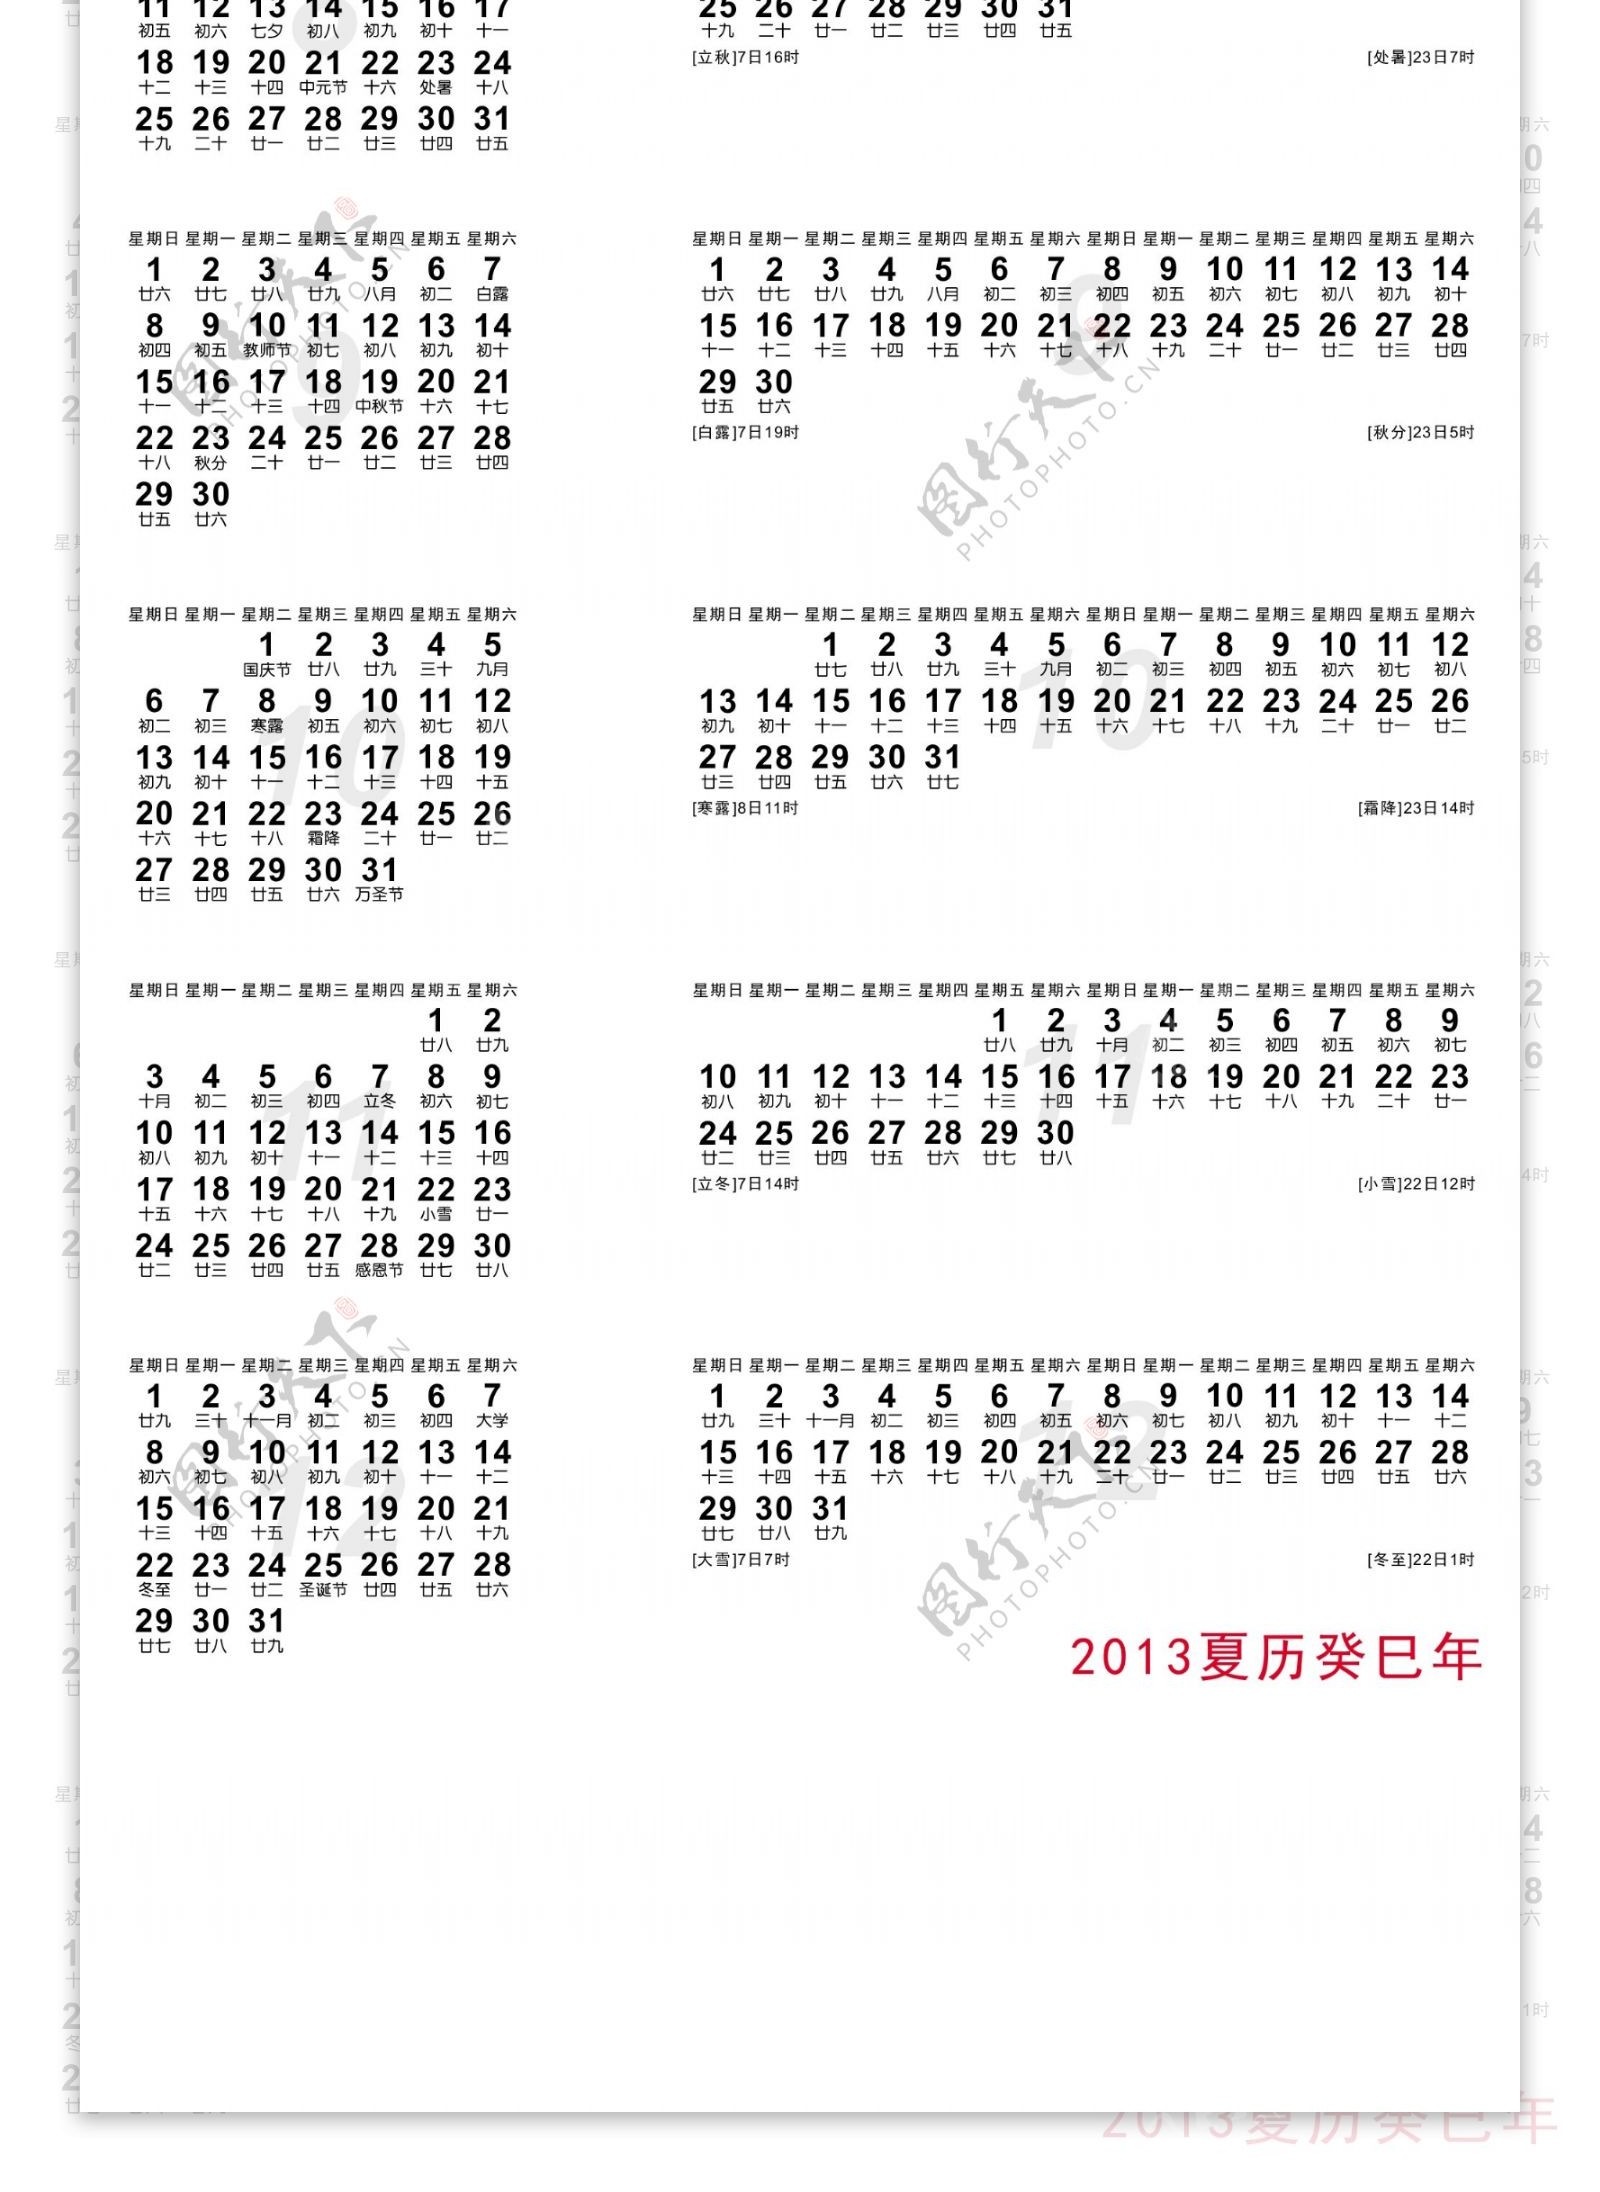 2013年日历矢量.ai文件